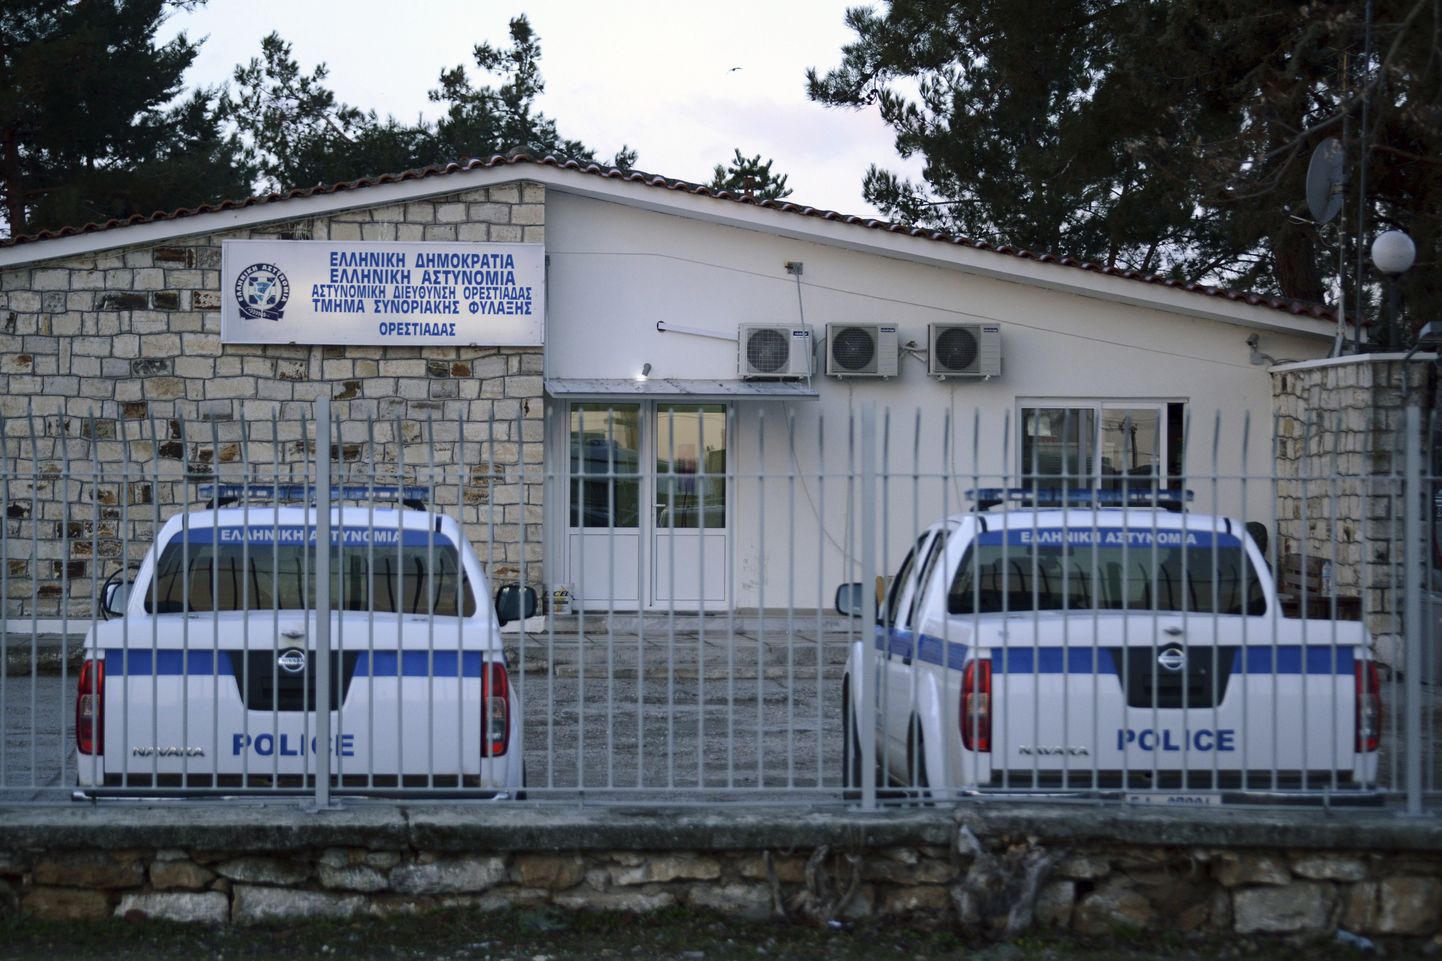 Kreeka politseiautod. Foto on illustreeriv.